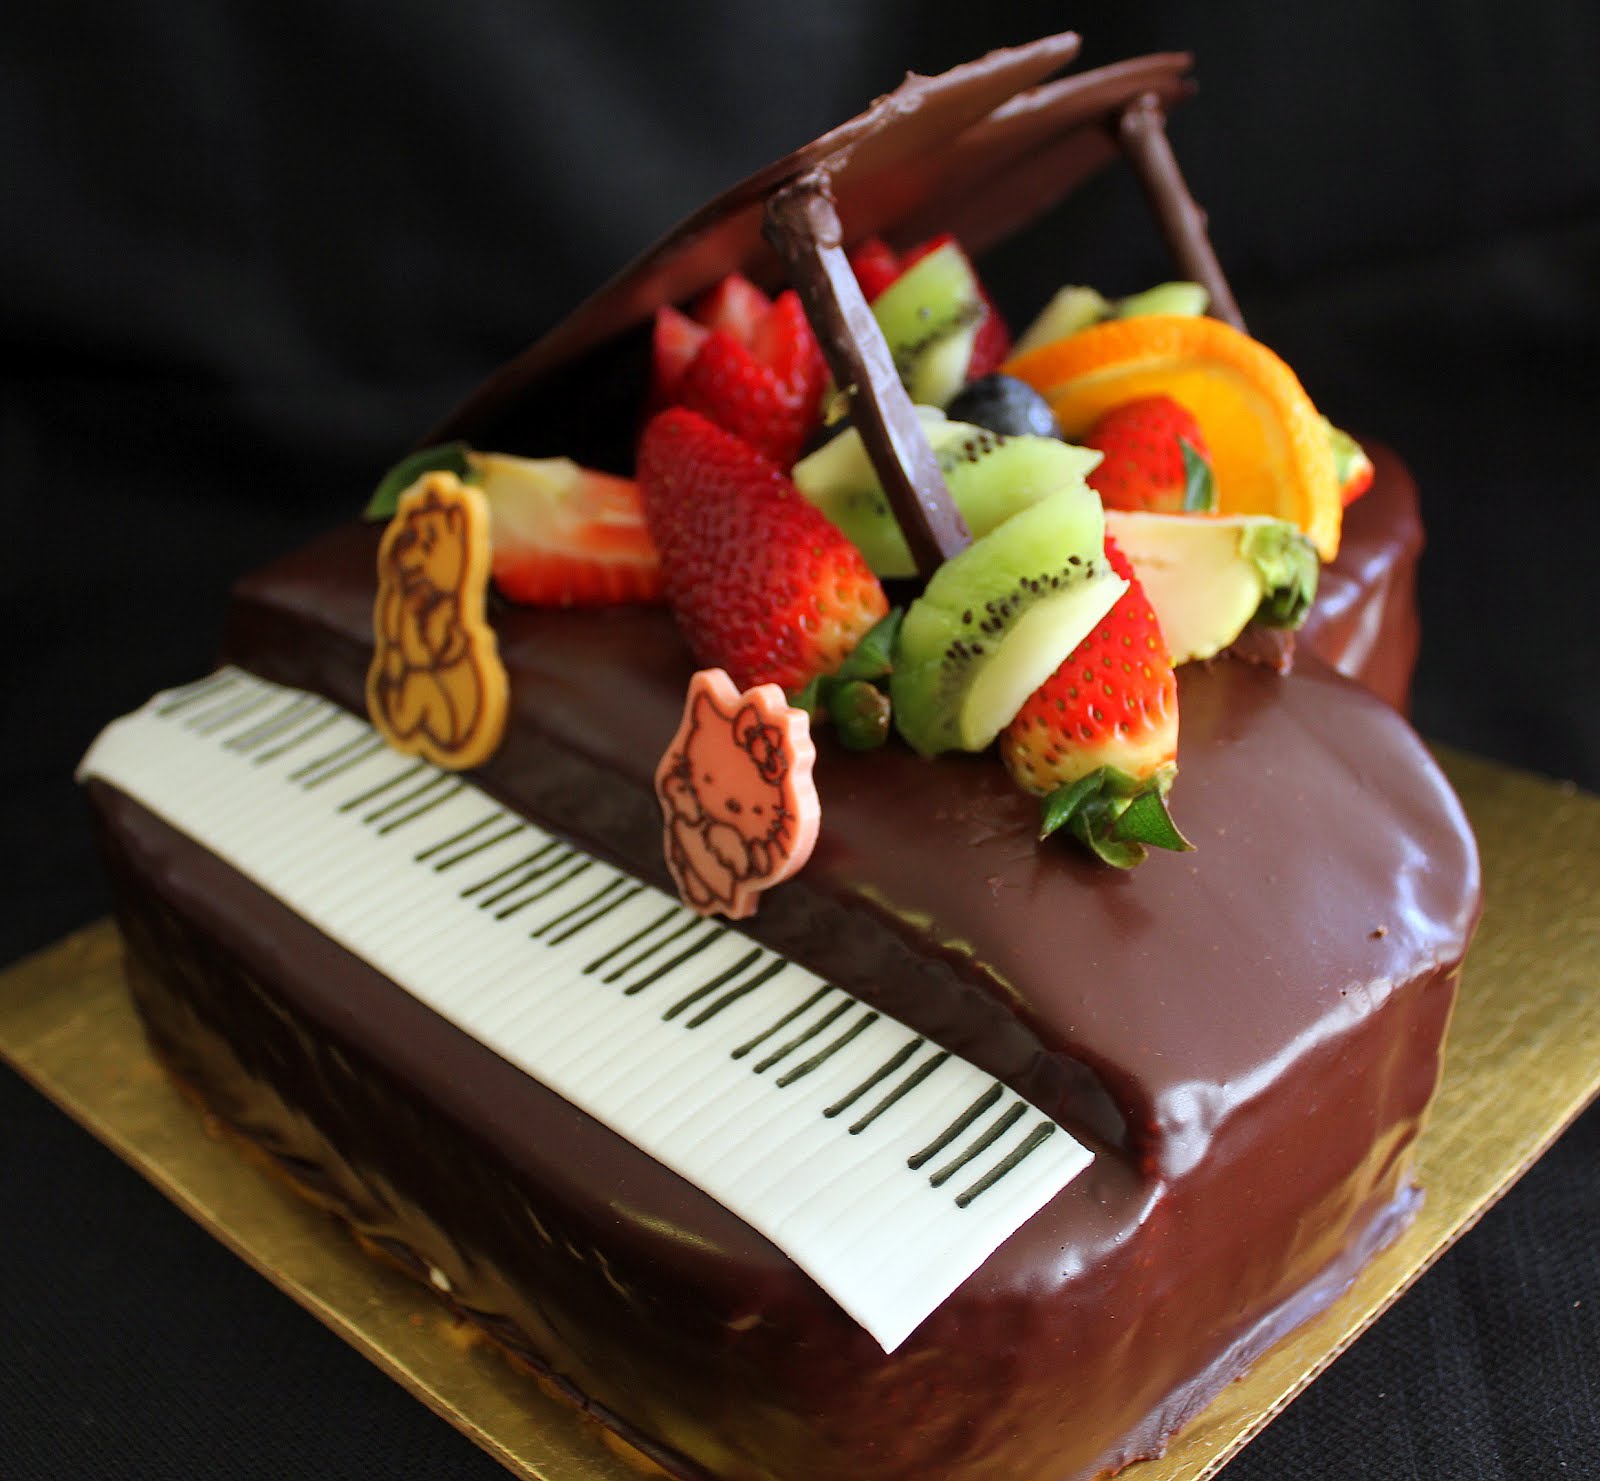 钢琴娃娃生日蛋糕裱花蛋糕#相约MOF#的做法_【图解】钢琴娃娃生日蛋糕裱花蛋糕#相约MOF#怎么做如何做好吃_钢琴娃娃生日蛋糕裱花蛋糕#相约 ...